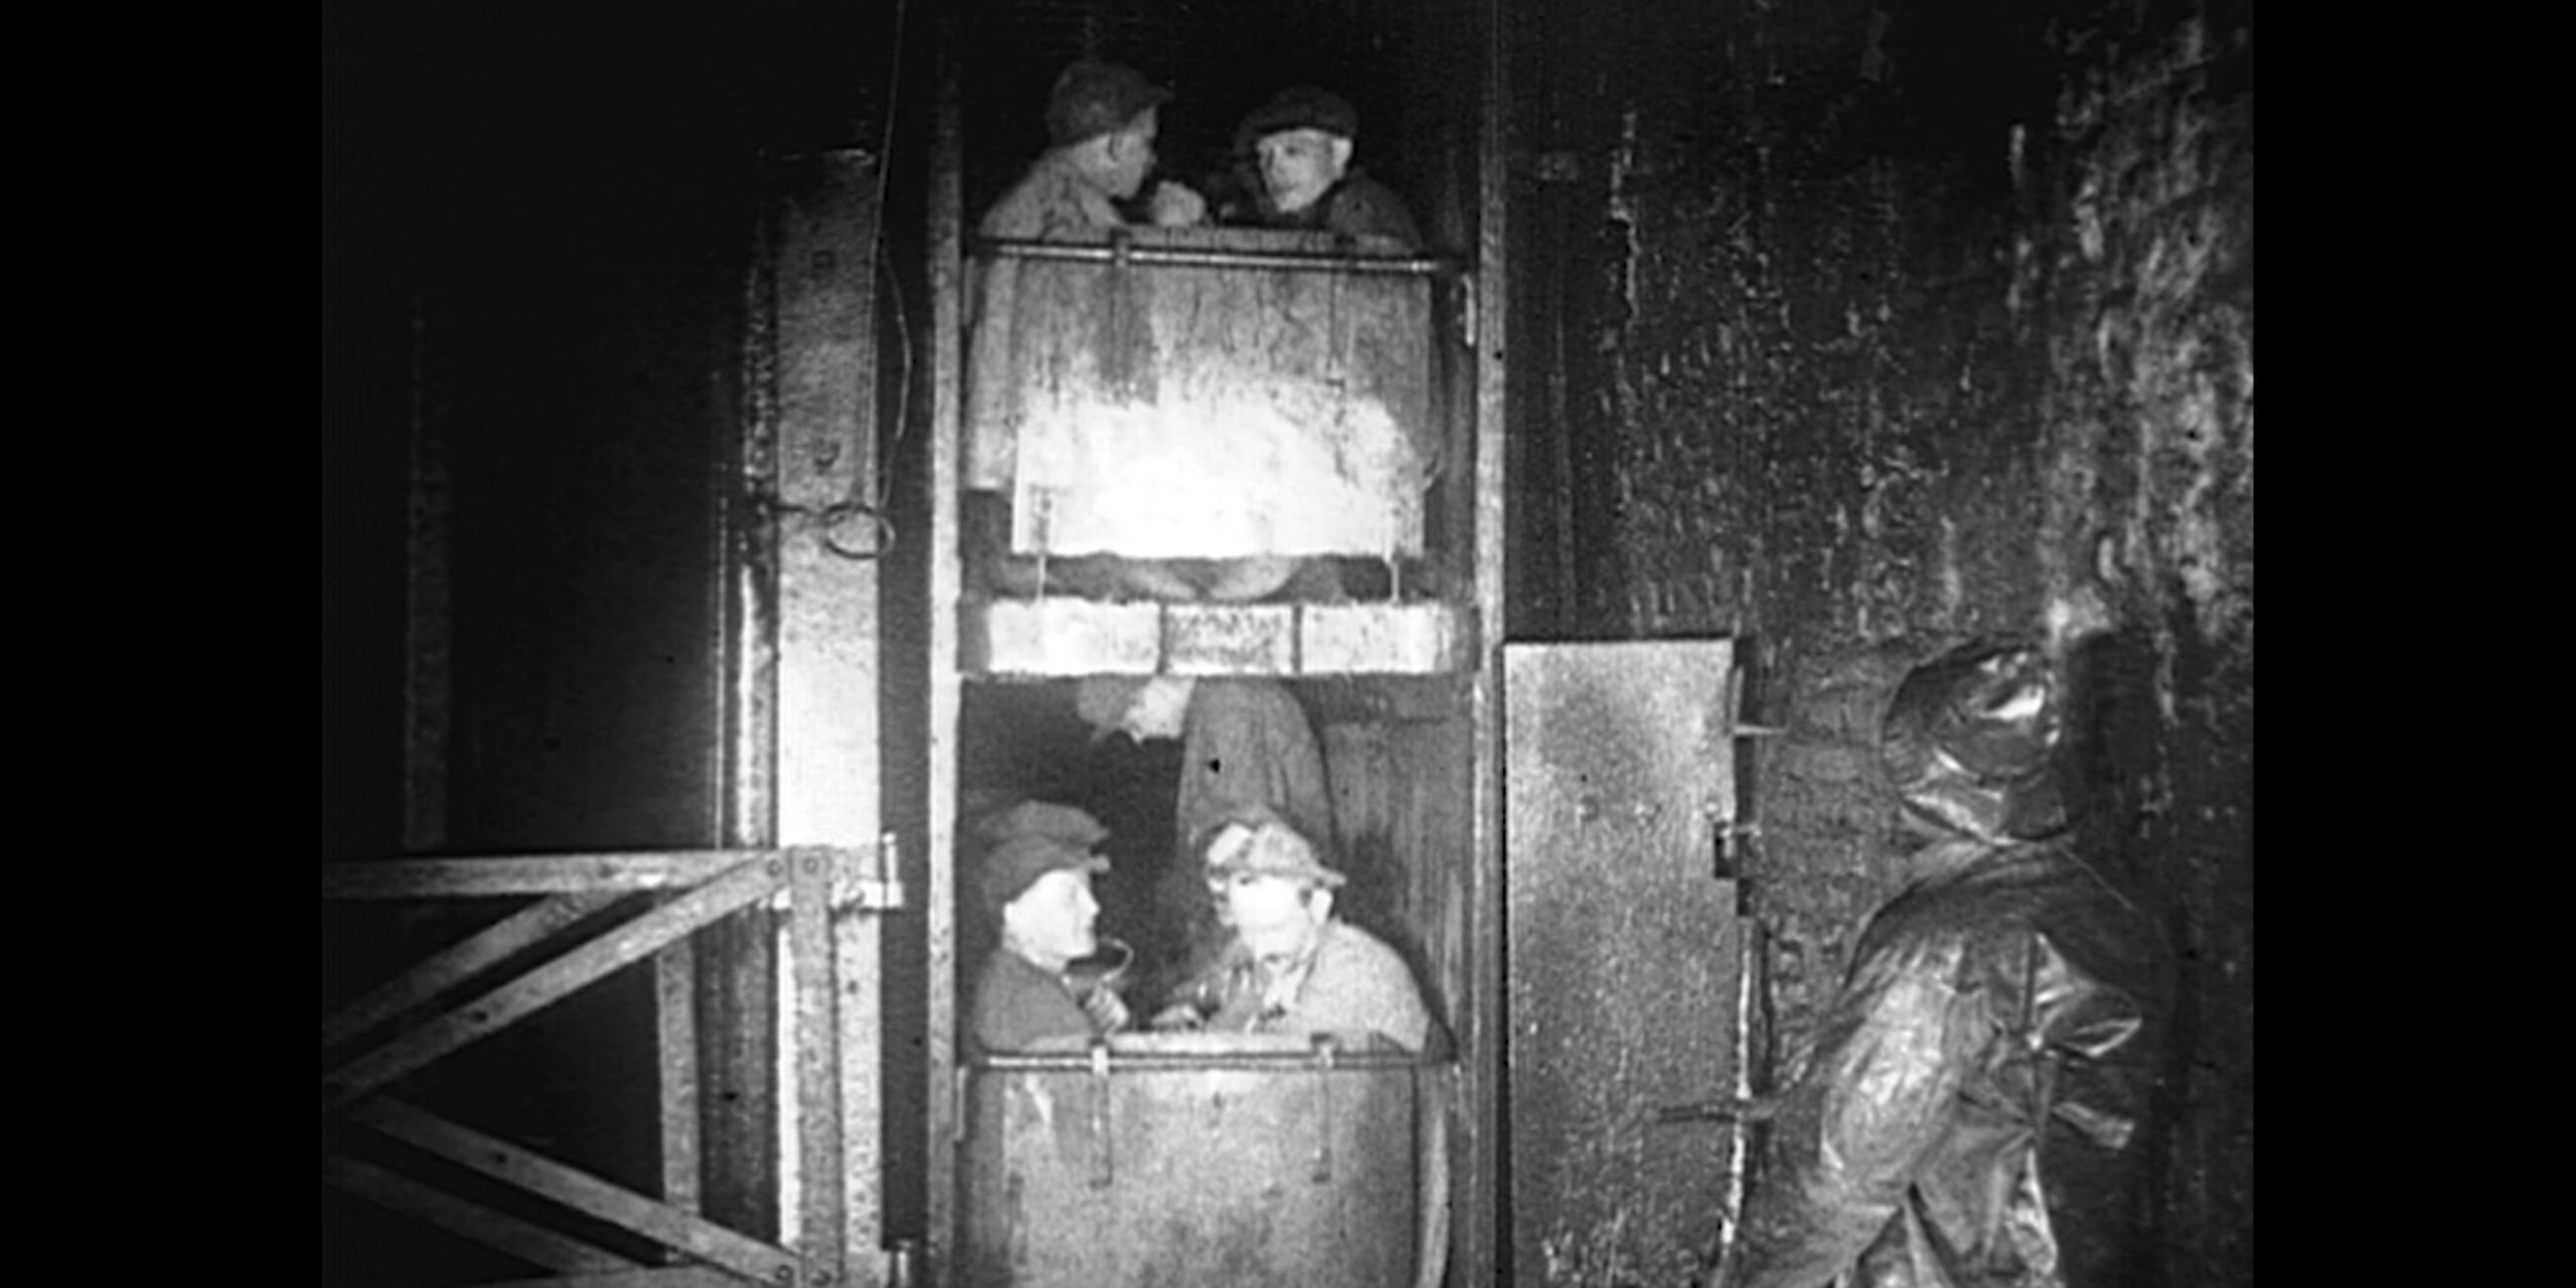 Bergarbeiter im Bergstollen sitzen in zwei übereinander liegenden Schachtwagen. Schwarz-weiße Fotografie